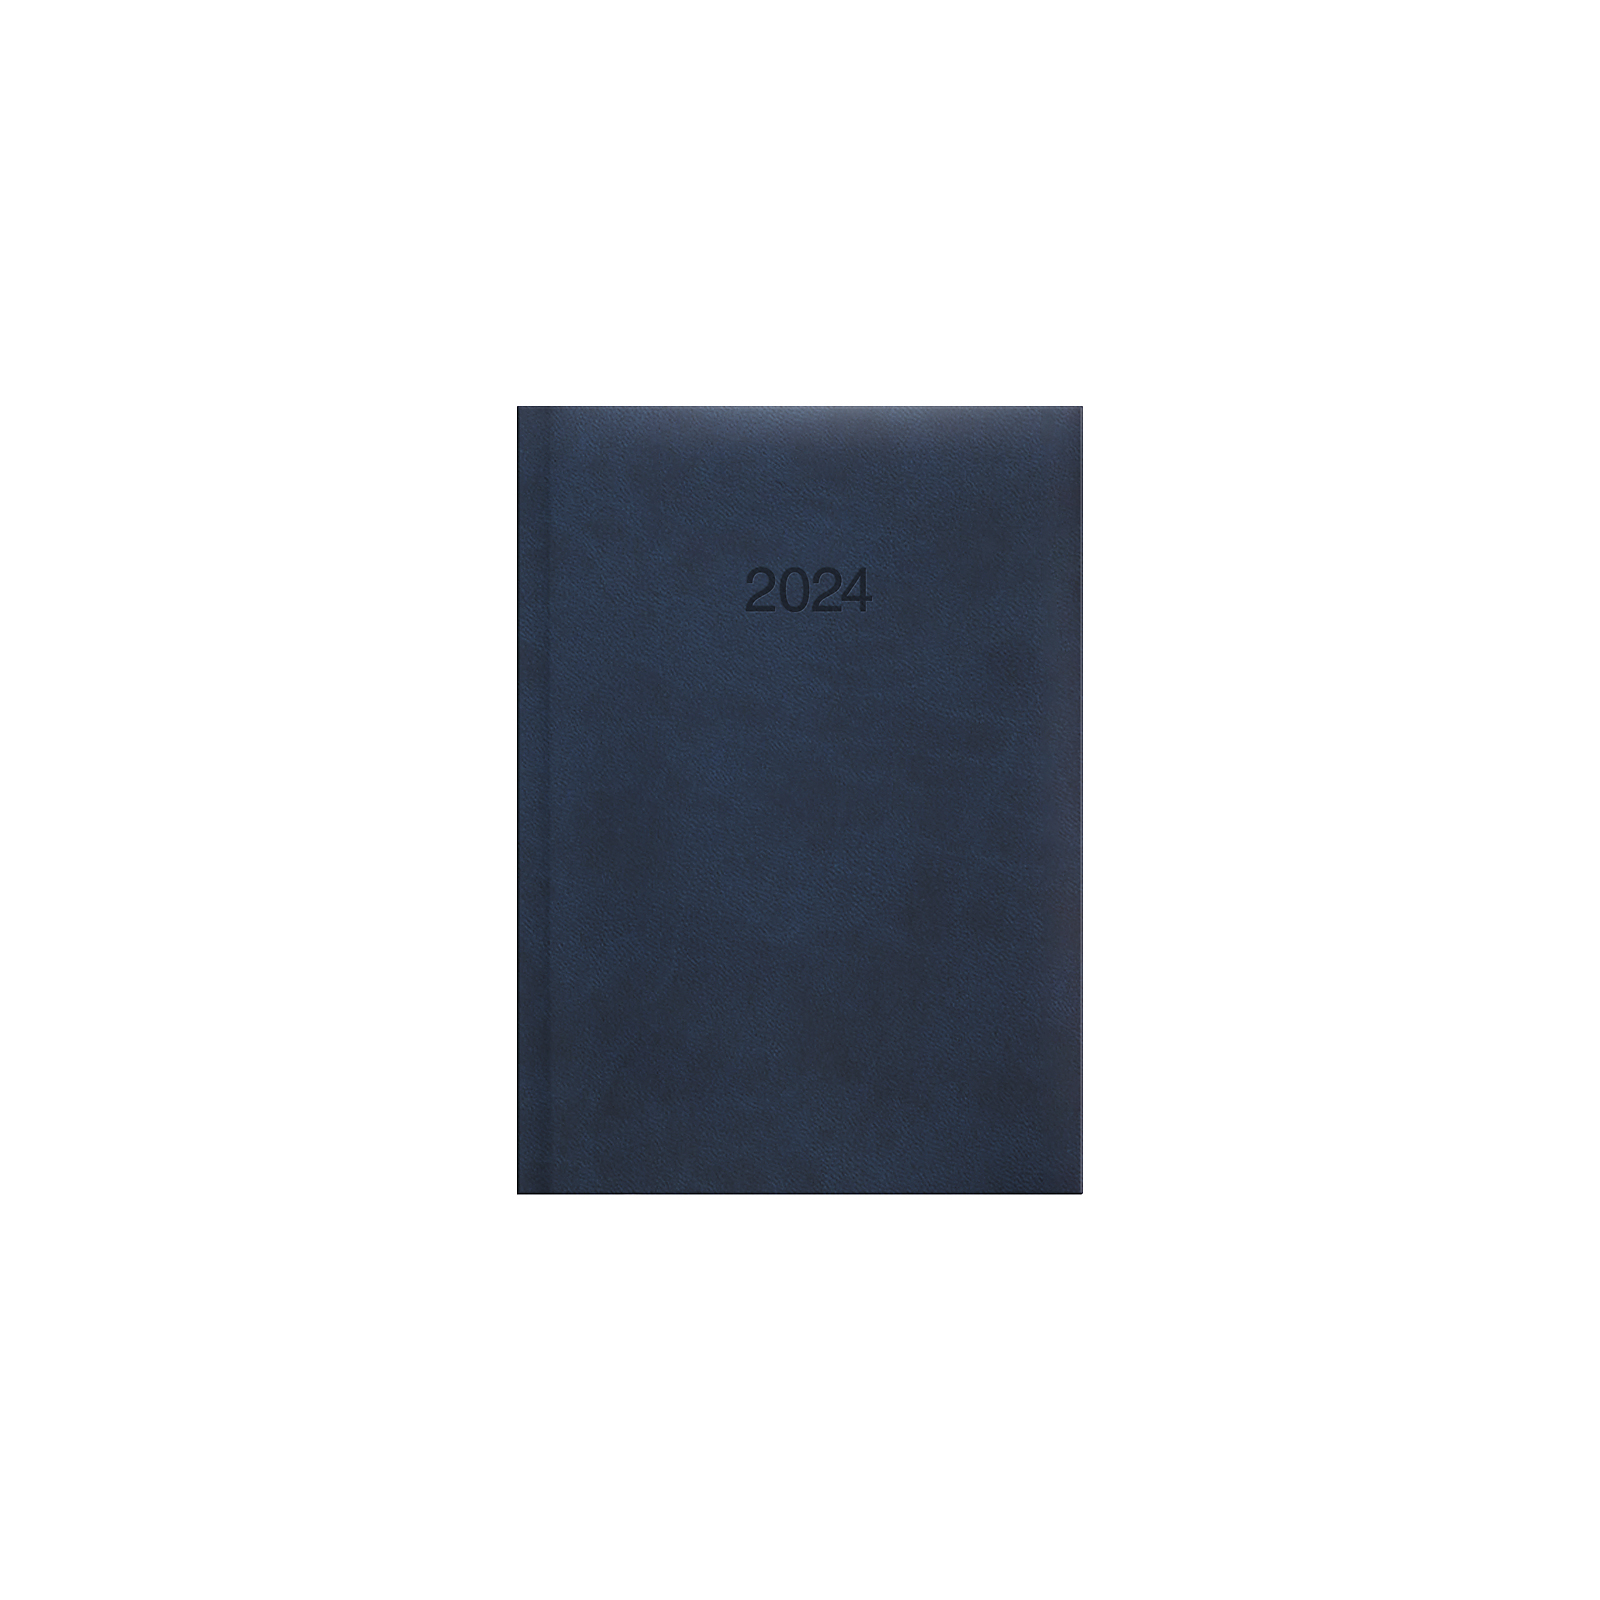 Еженедельник Brunnen датированный 2024 Torino Trend карманный A6 10х14 см 184 страницы Марсала (73-736 38 294)